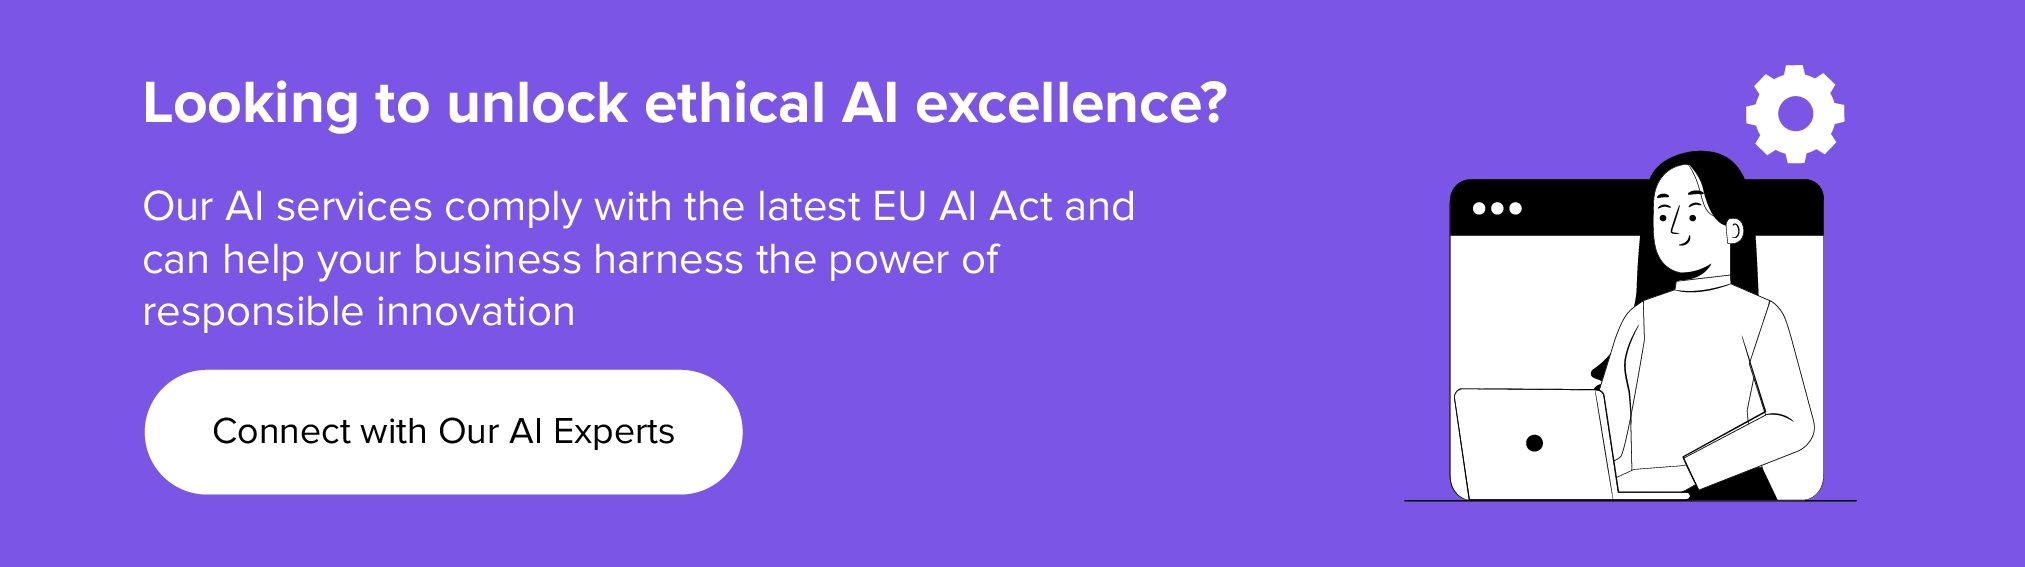 colaborează cu noi pentru a debloca excelența etică în IA